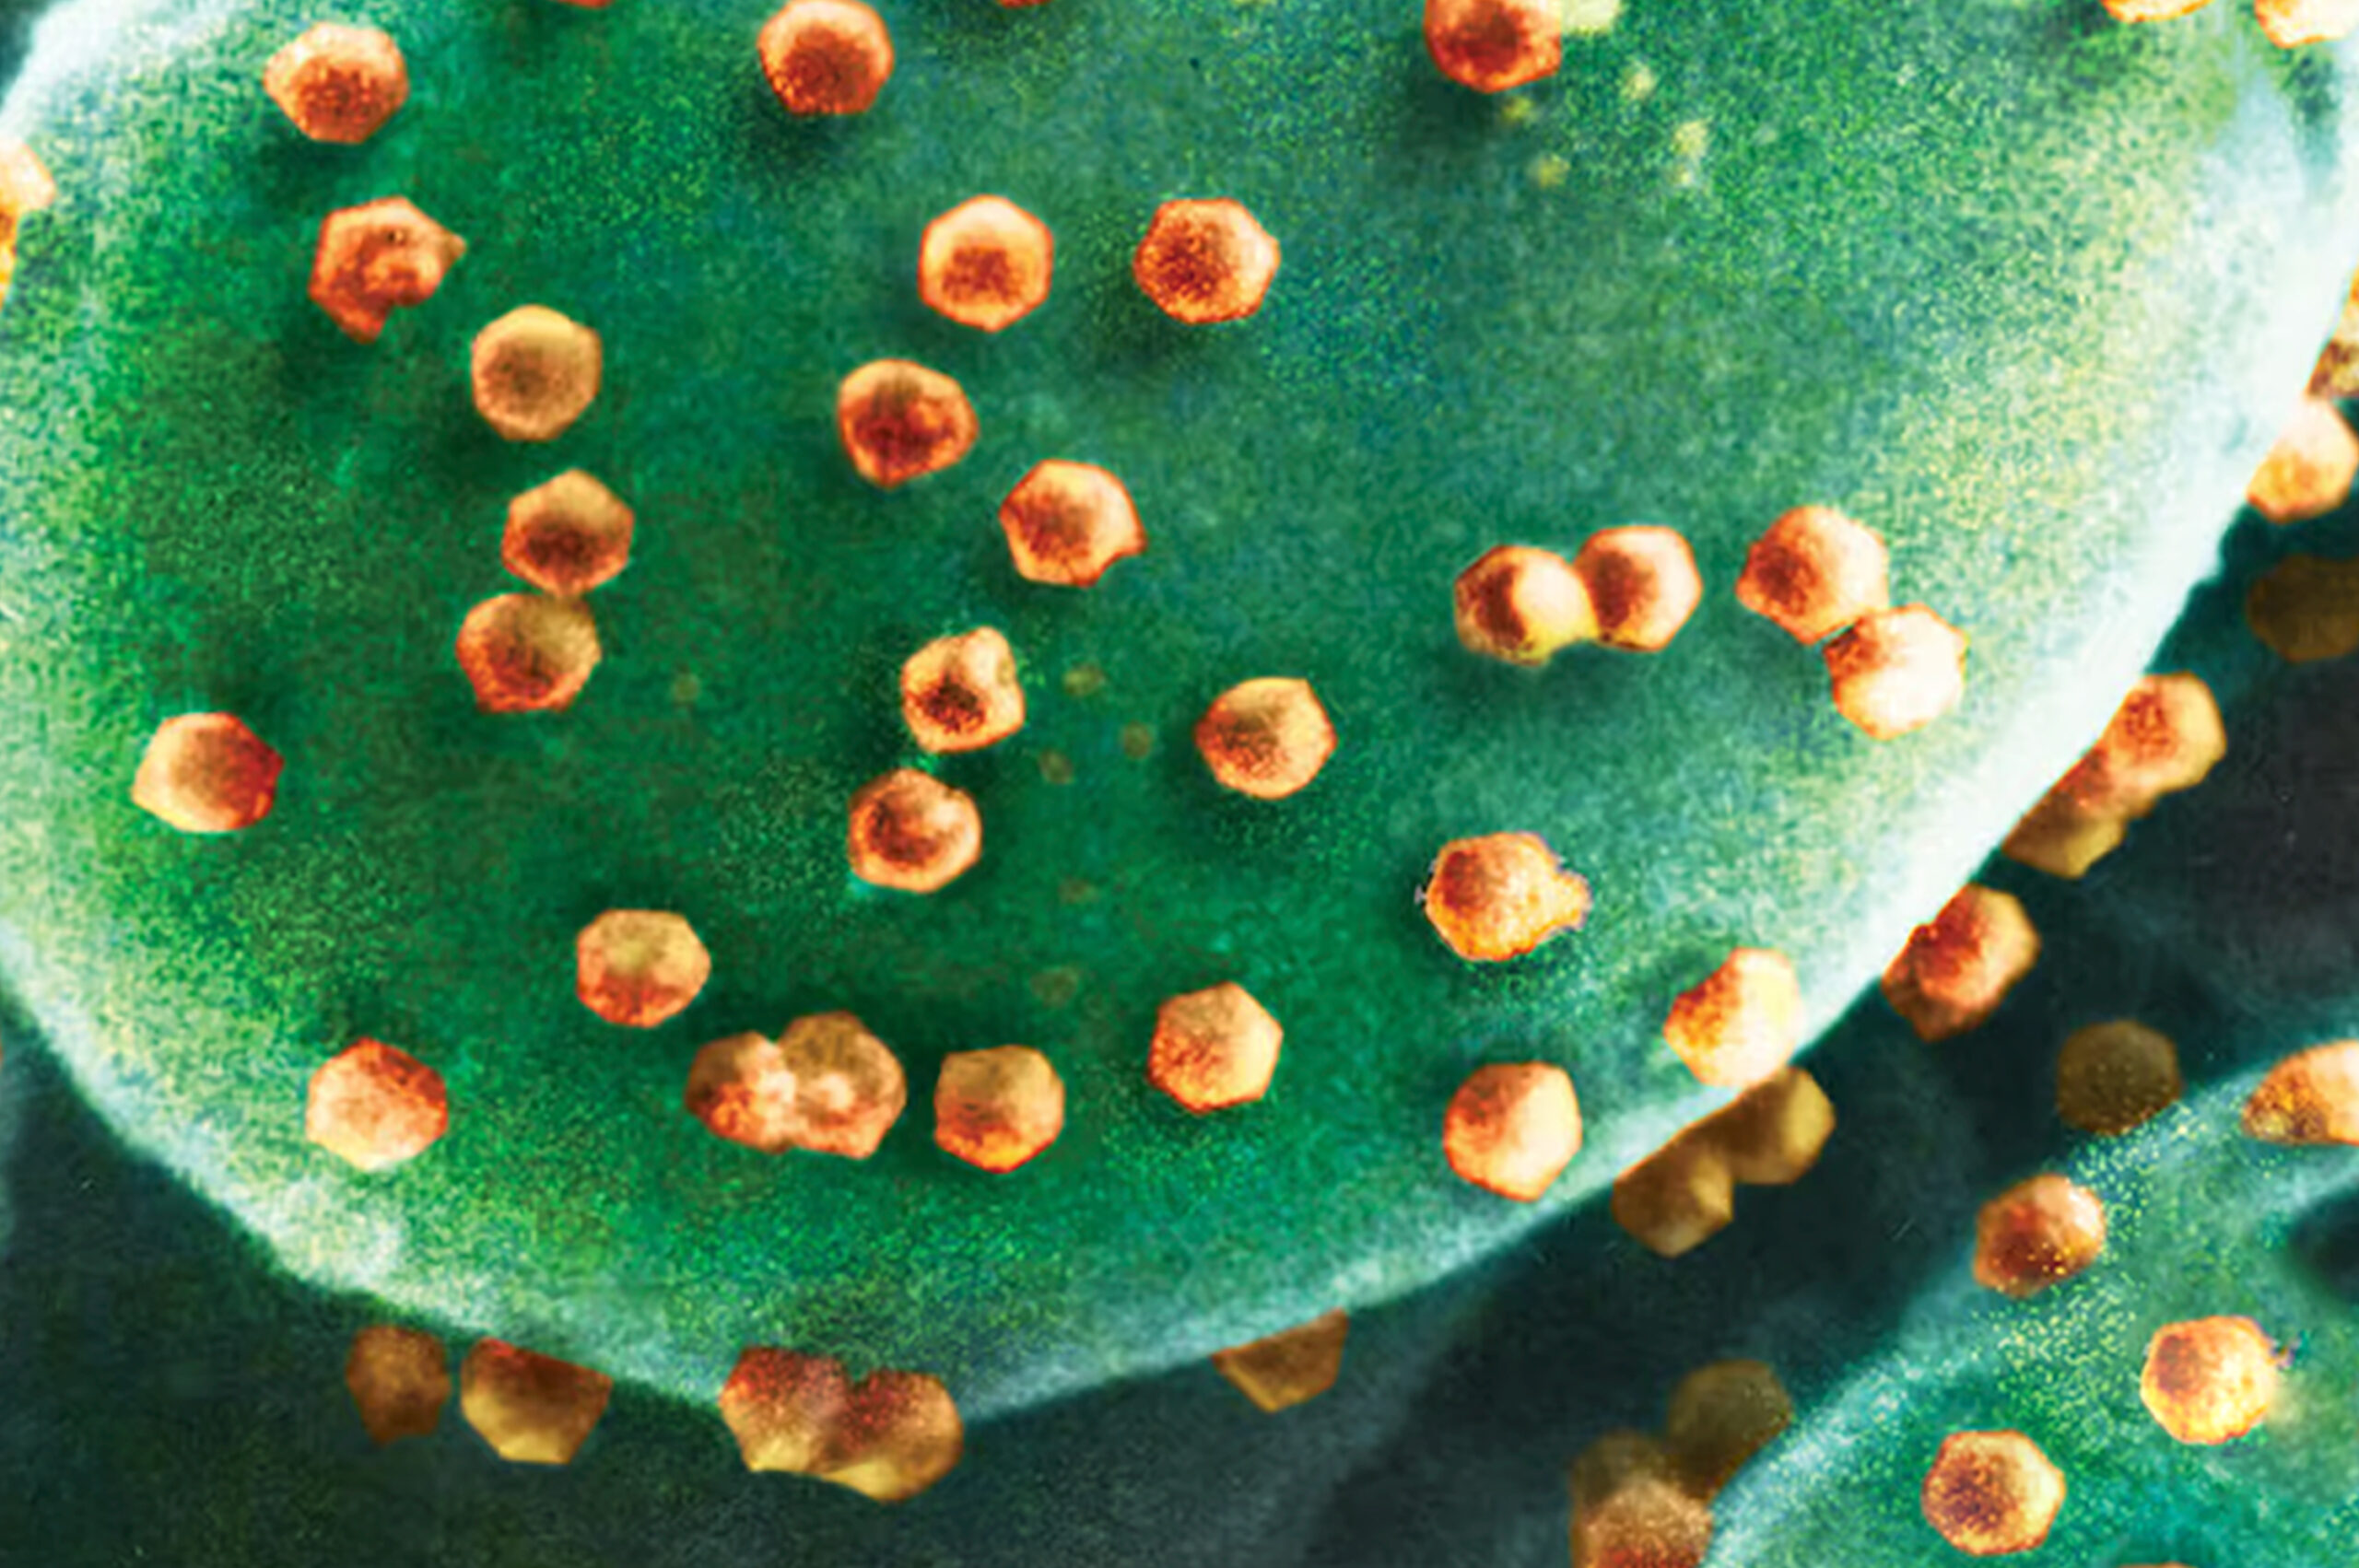 Prvi otkriveni “virovori”: Ovo je organizam koji jede viruse